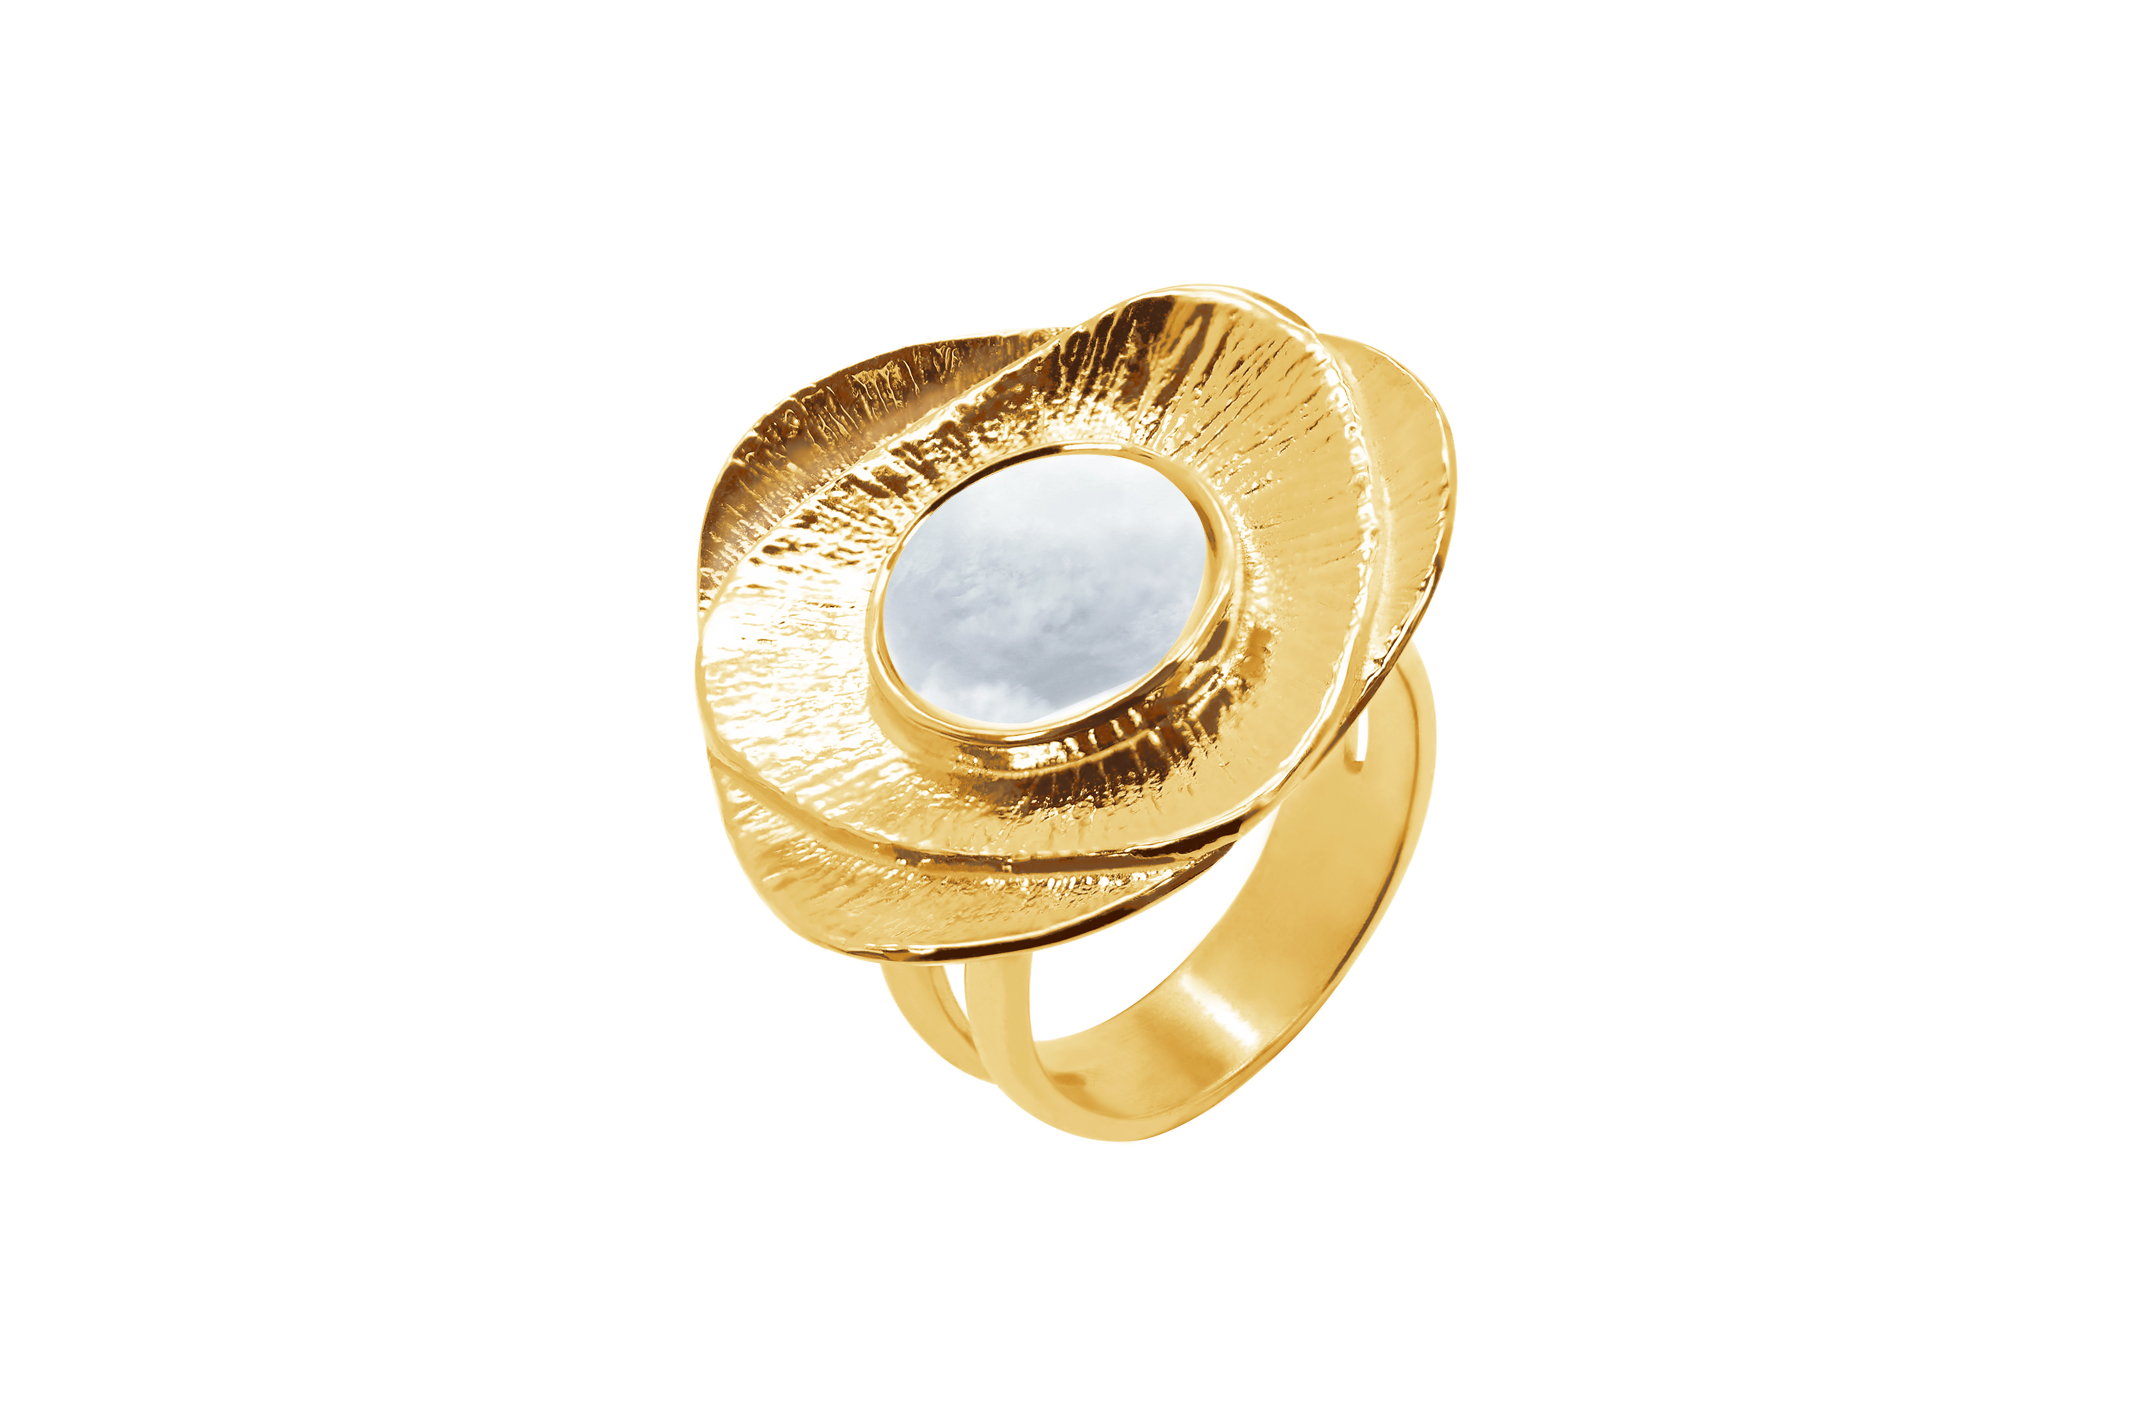 Joia: anel;Material: prata 925;Peso: 9.38 gr;Pedras: madrepérola;Cor: amarelo;Género: mulher